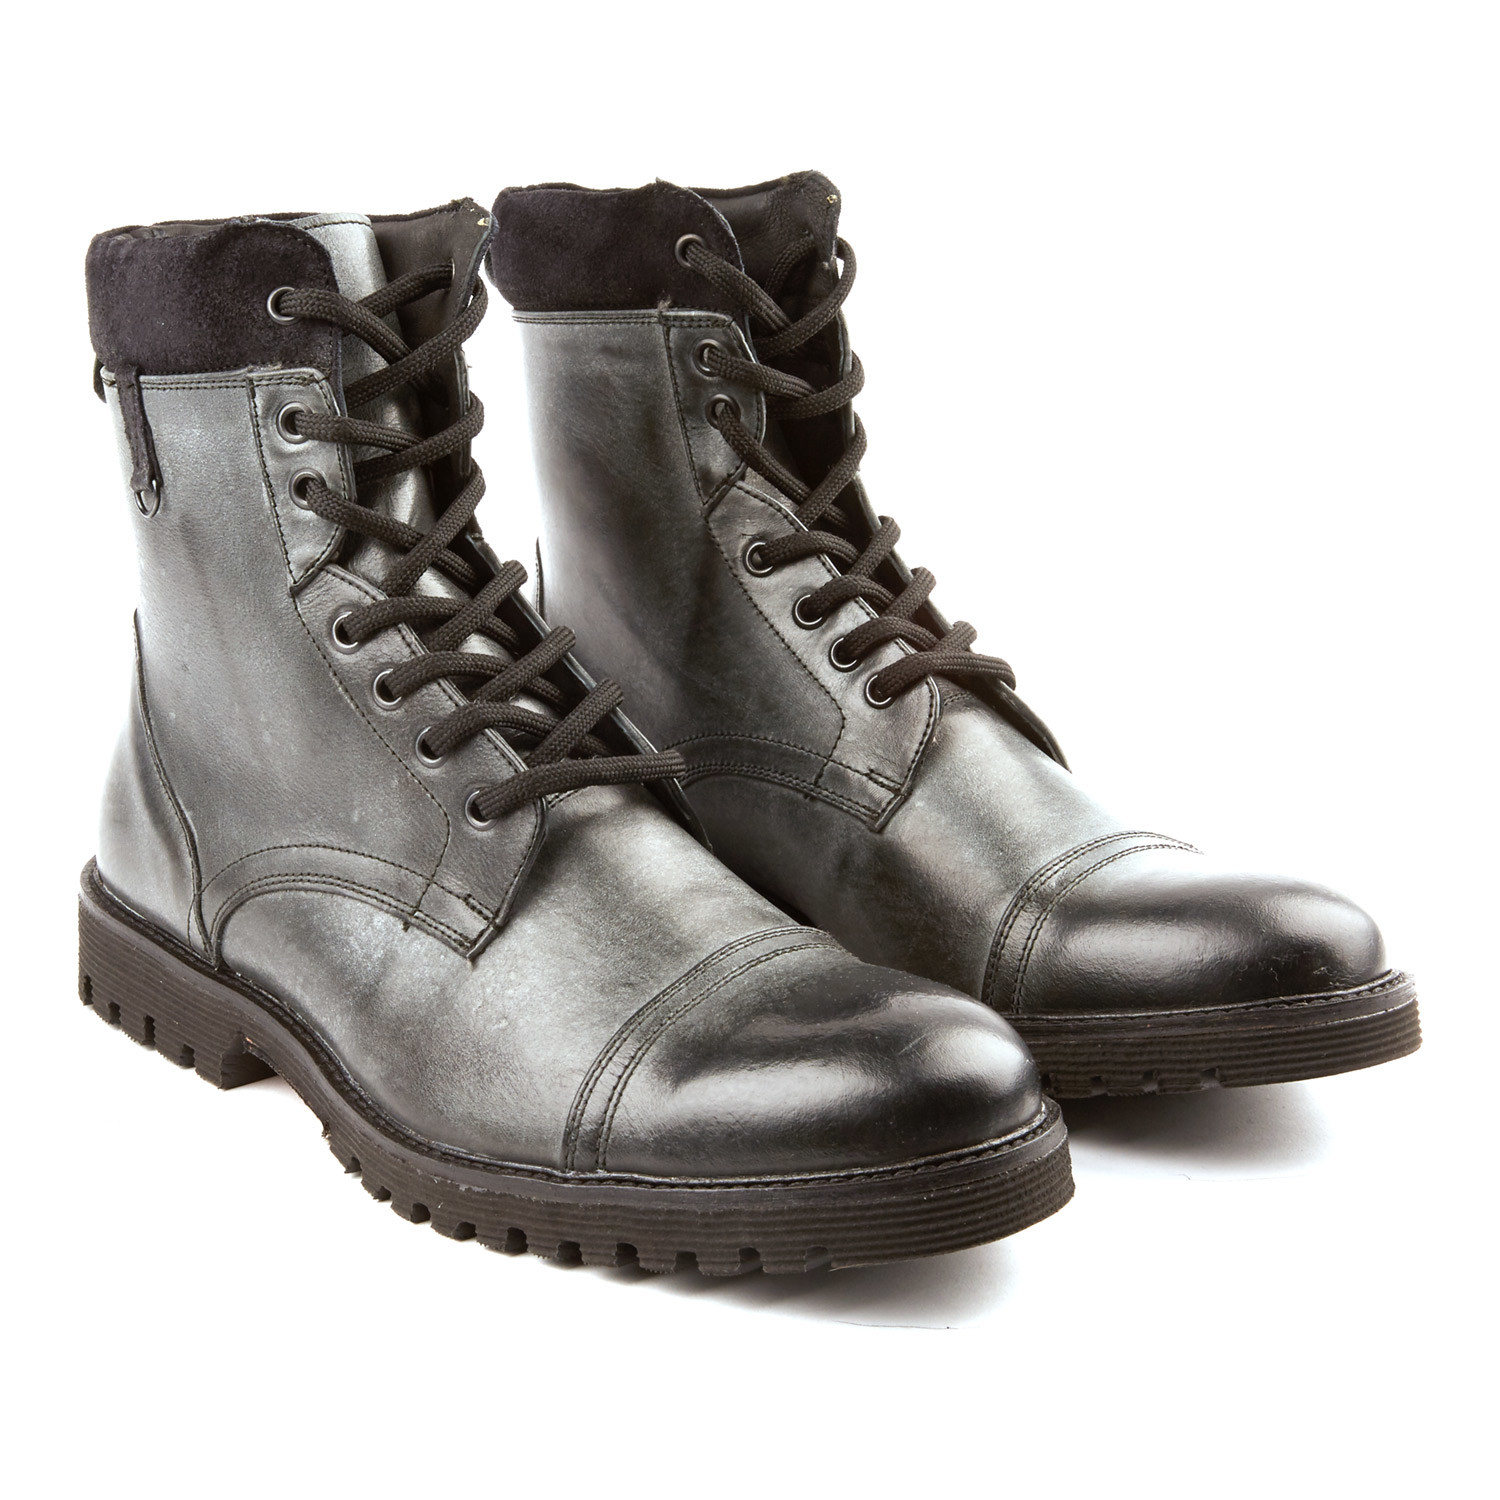 cap toe combat boots